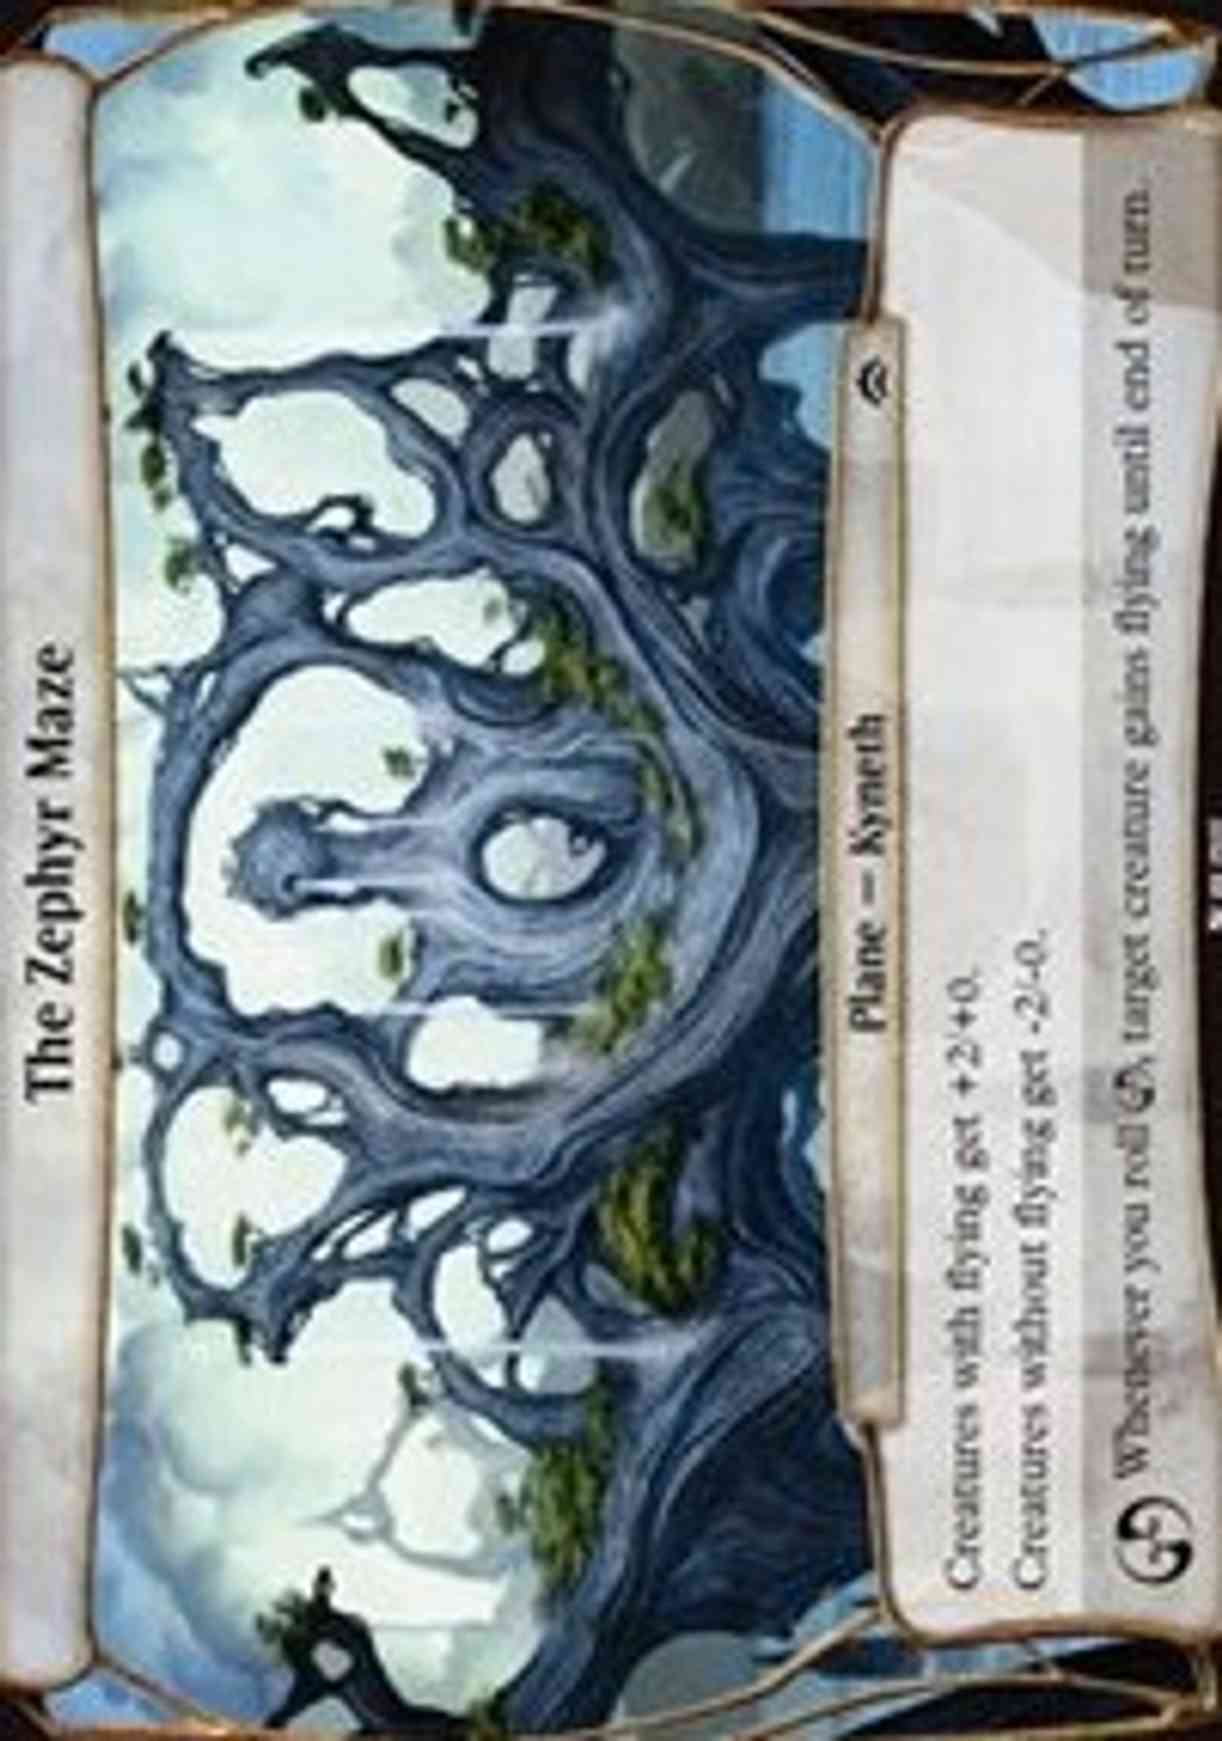 The Zephyr Maze (Planechase Anthology) magic card front